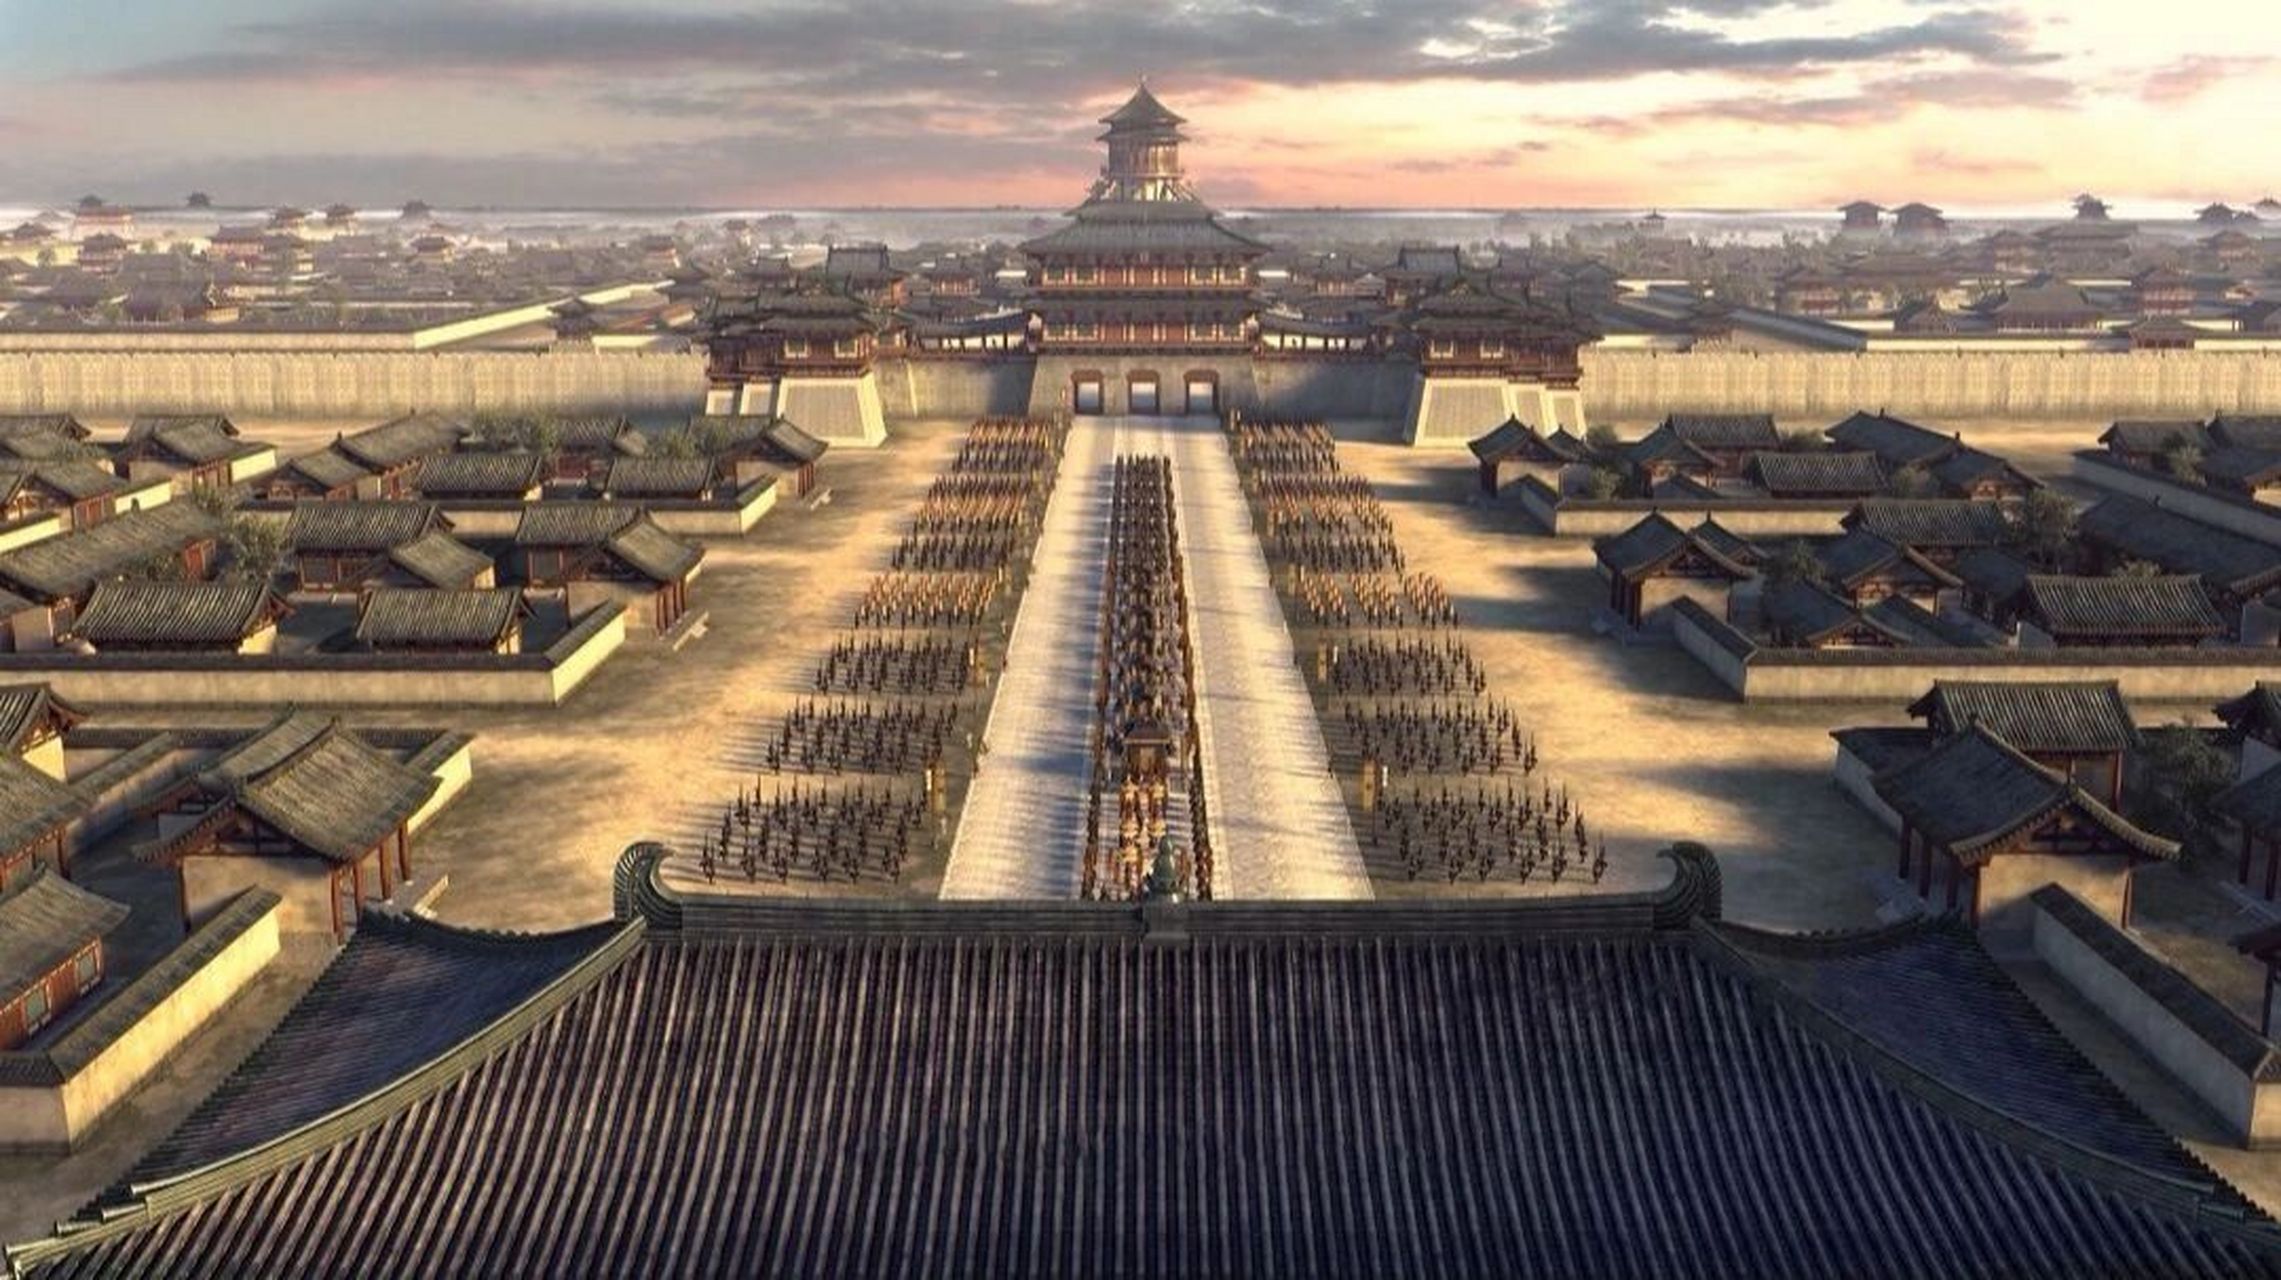 古建筑文化:中国古代都城之隋唐洛阳城 隋唐洛阳城,是隋唐两代的都城